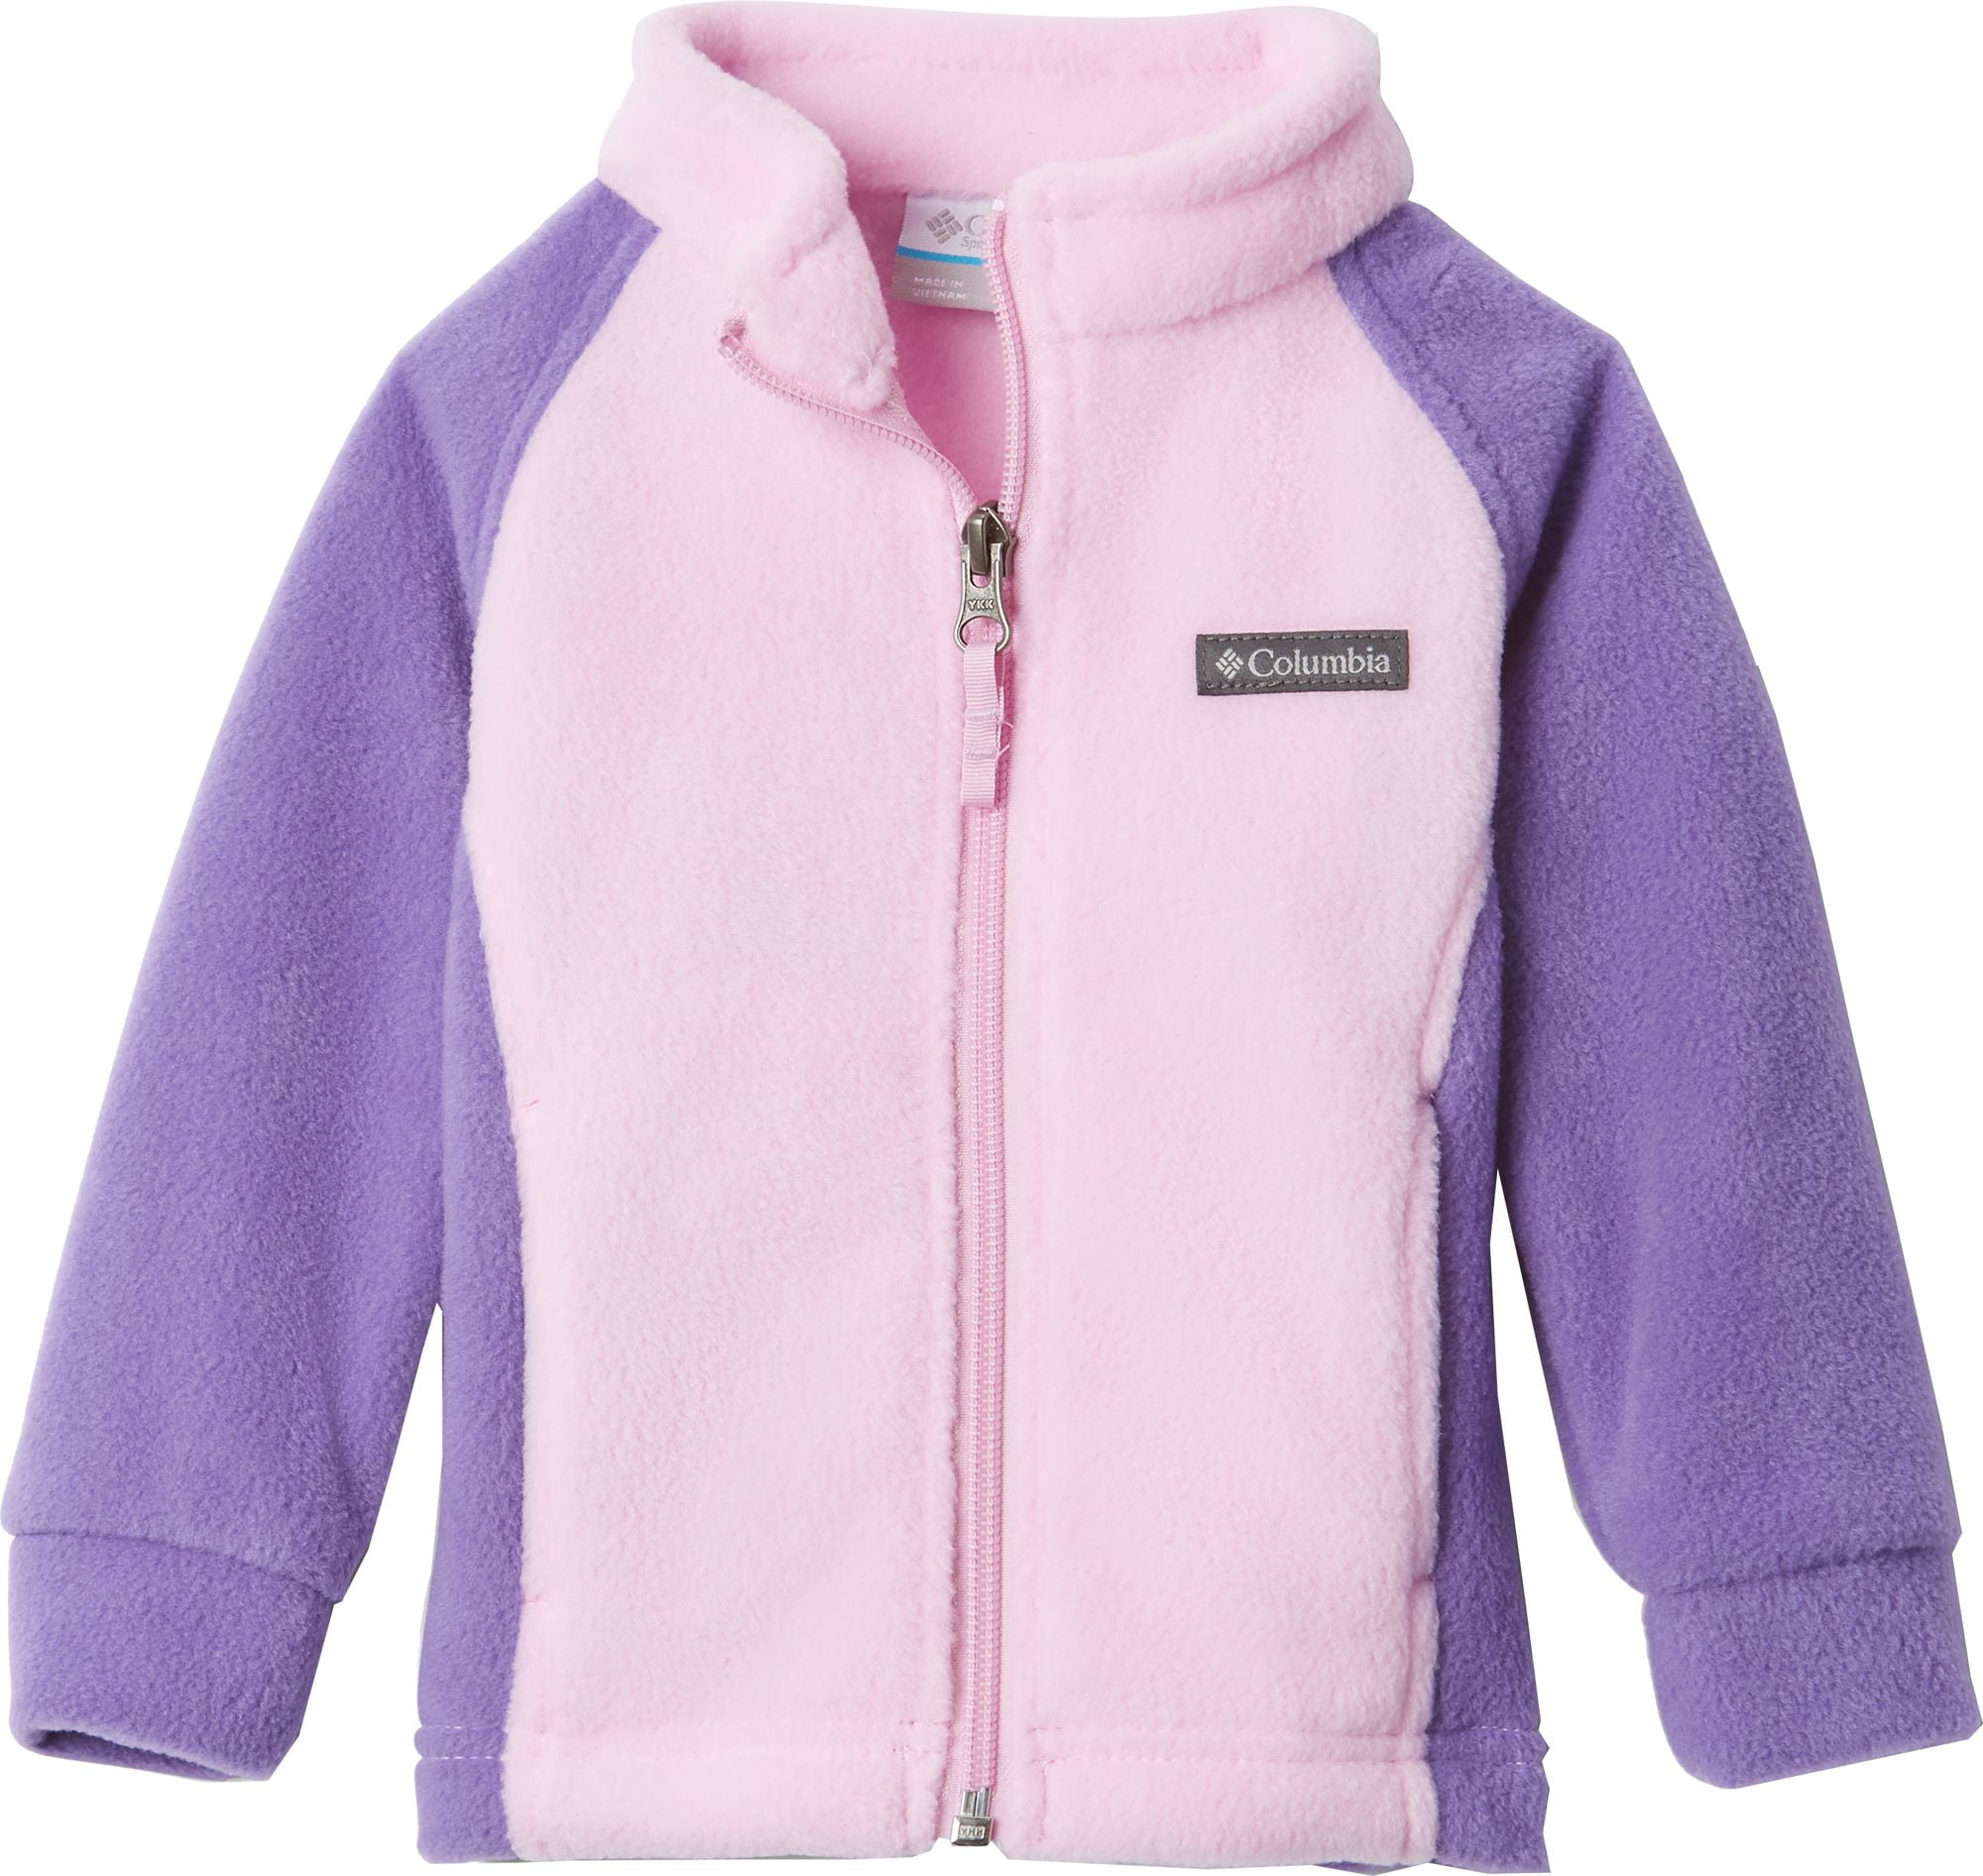 columbia fleece jacket toddler girl